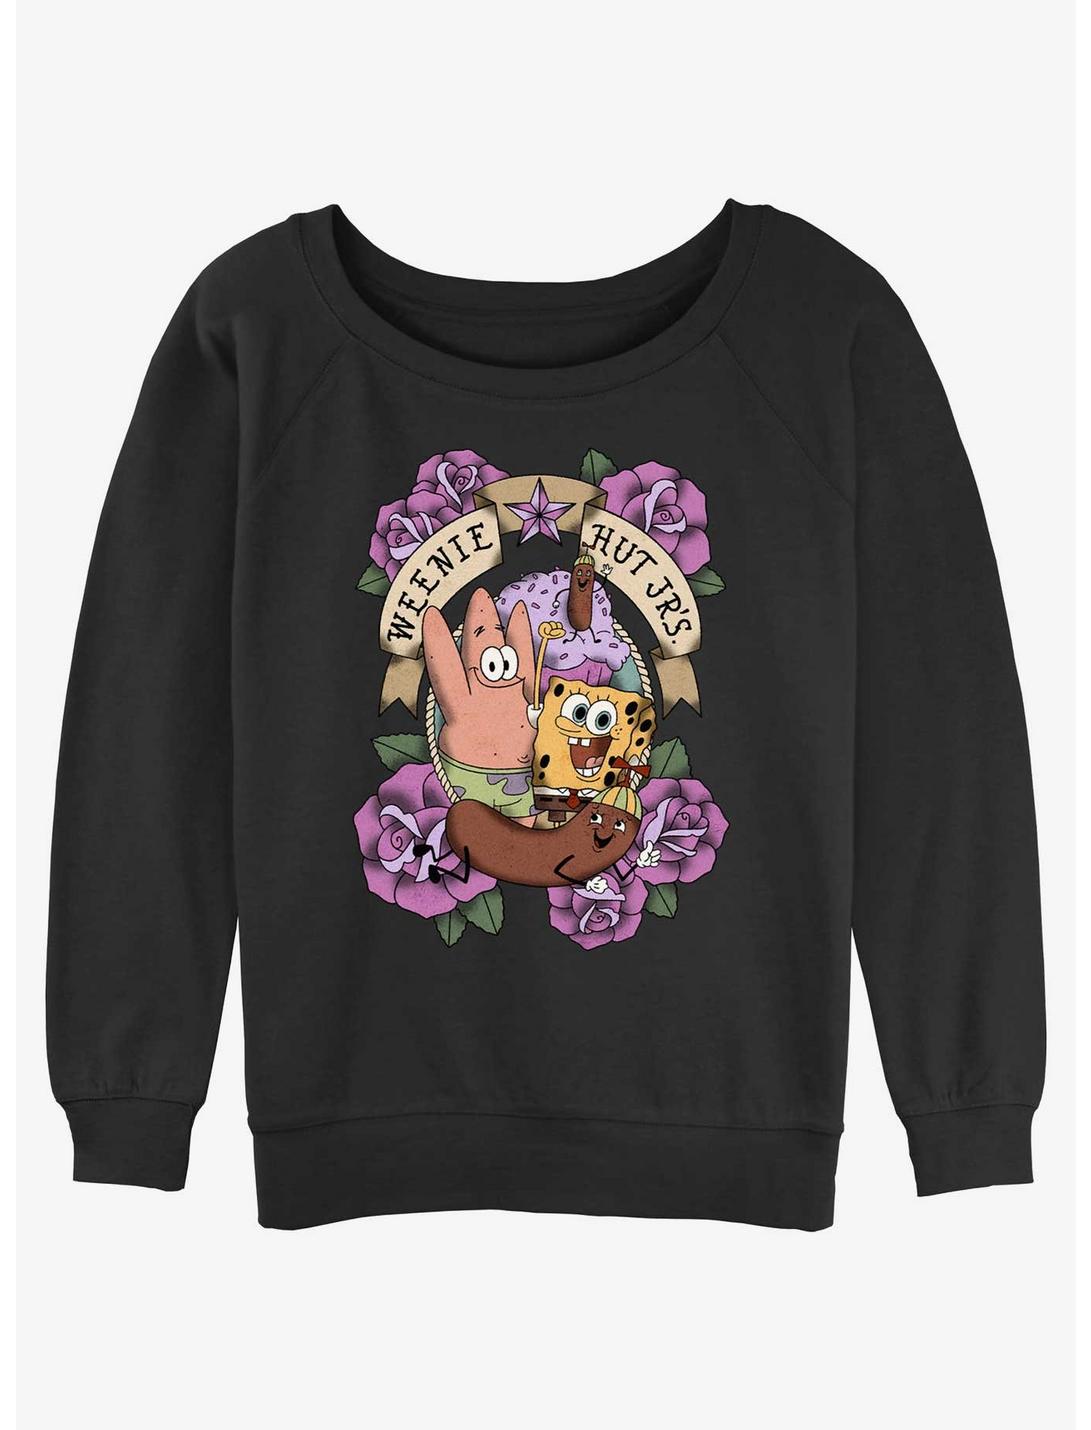 Spongebob Squarepants Weenie Hut Jr's Womens Slouchy Sweatshirt, BLACK, hi-res